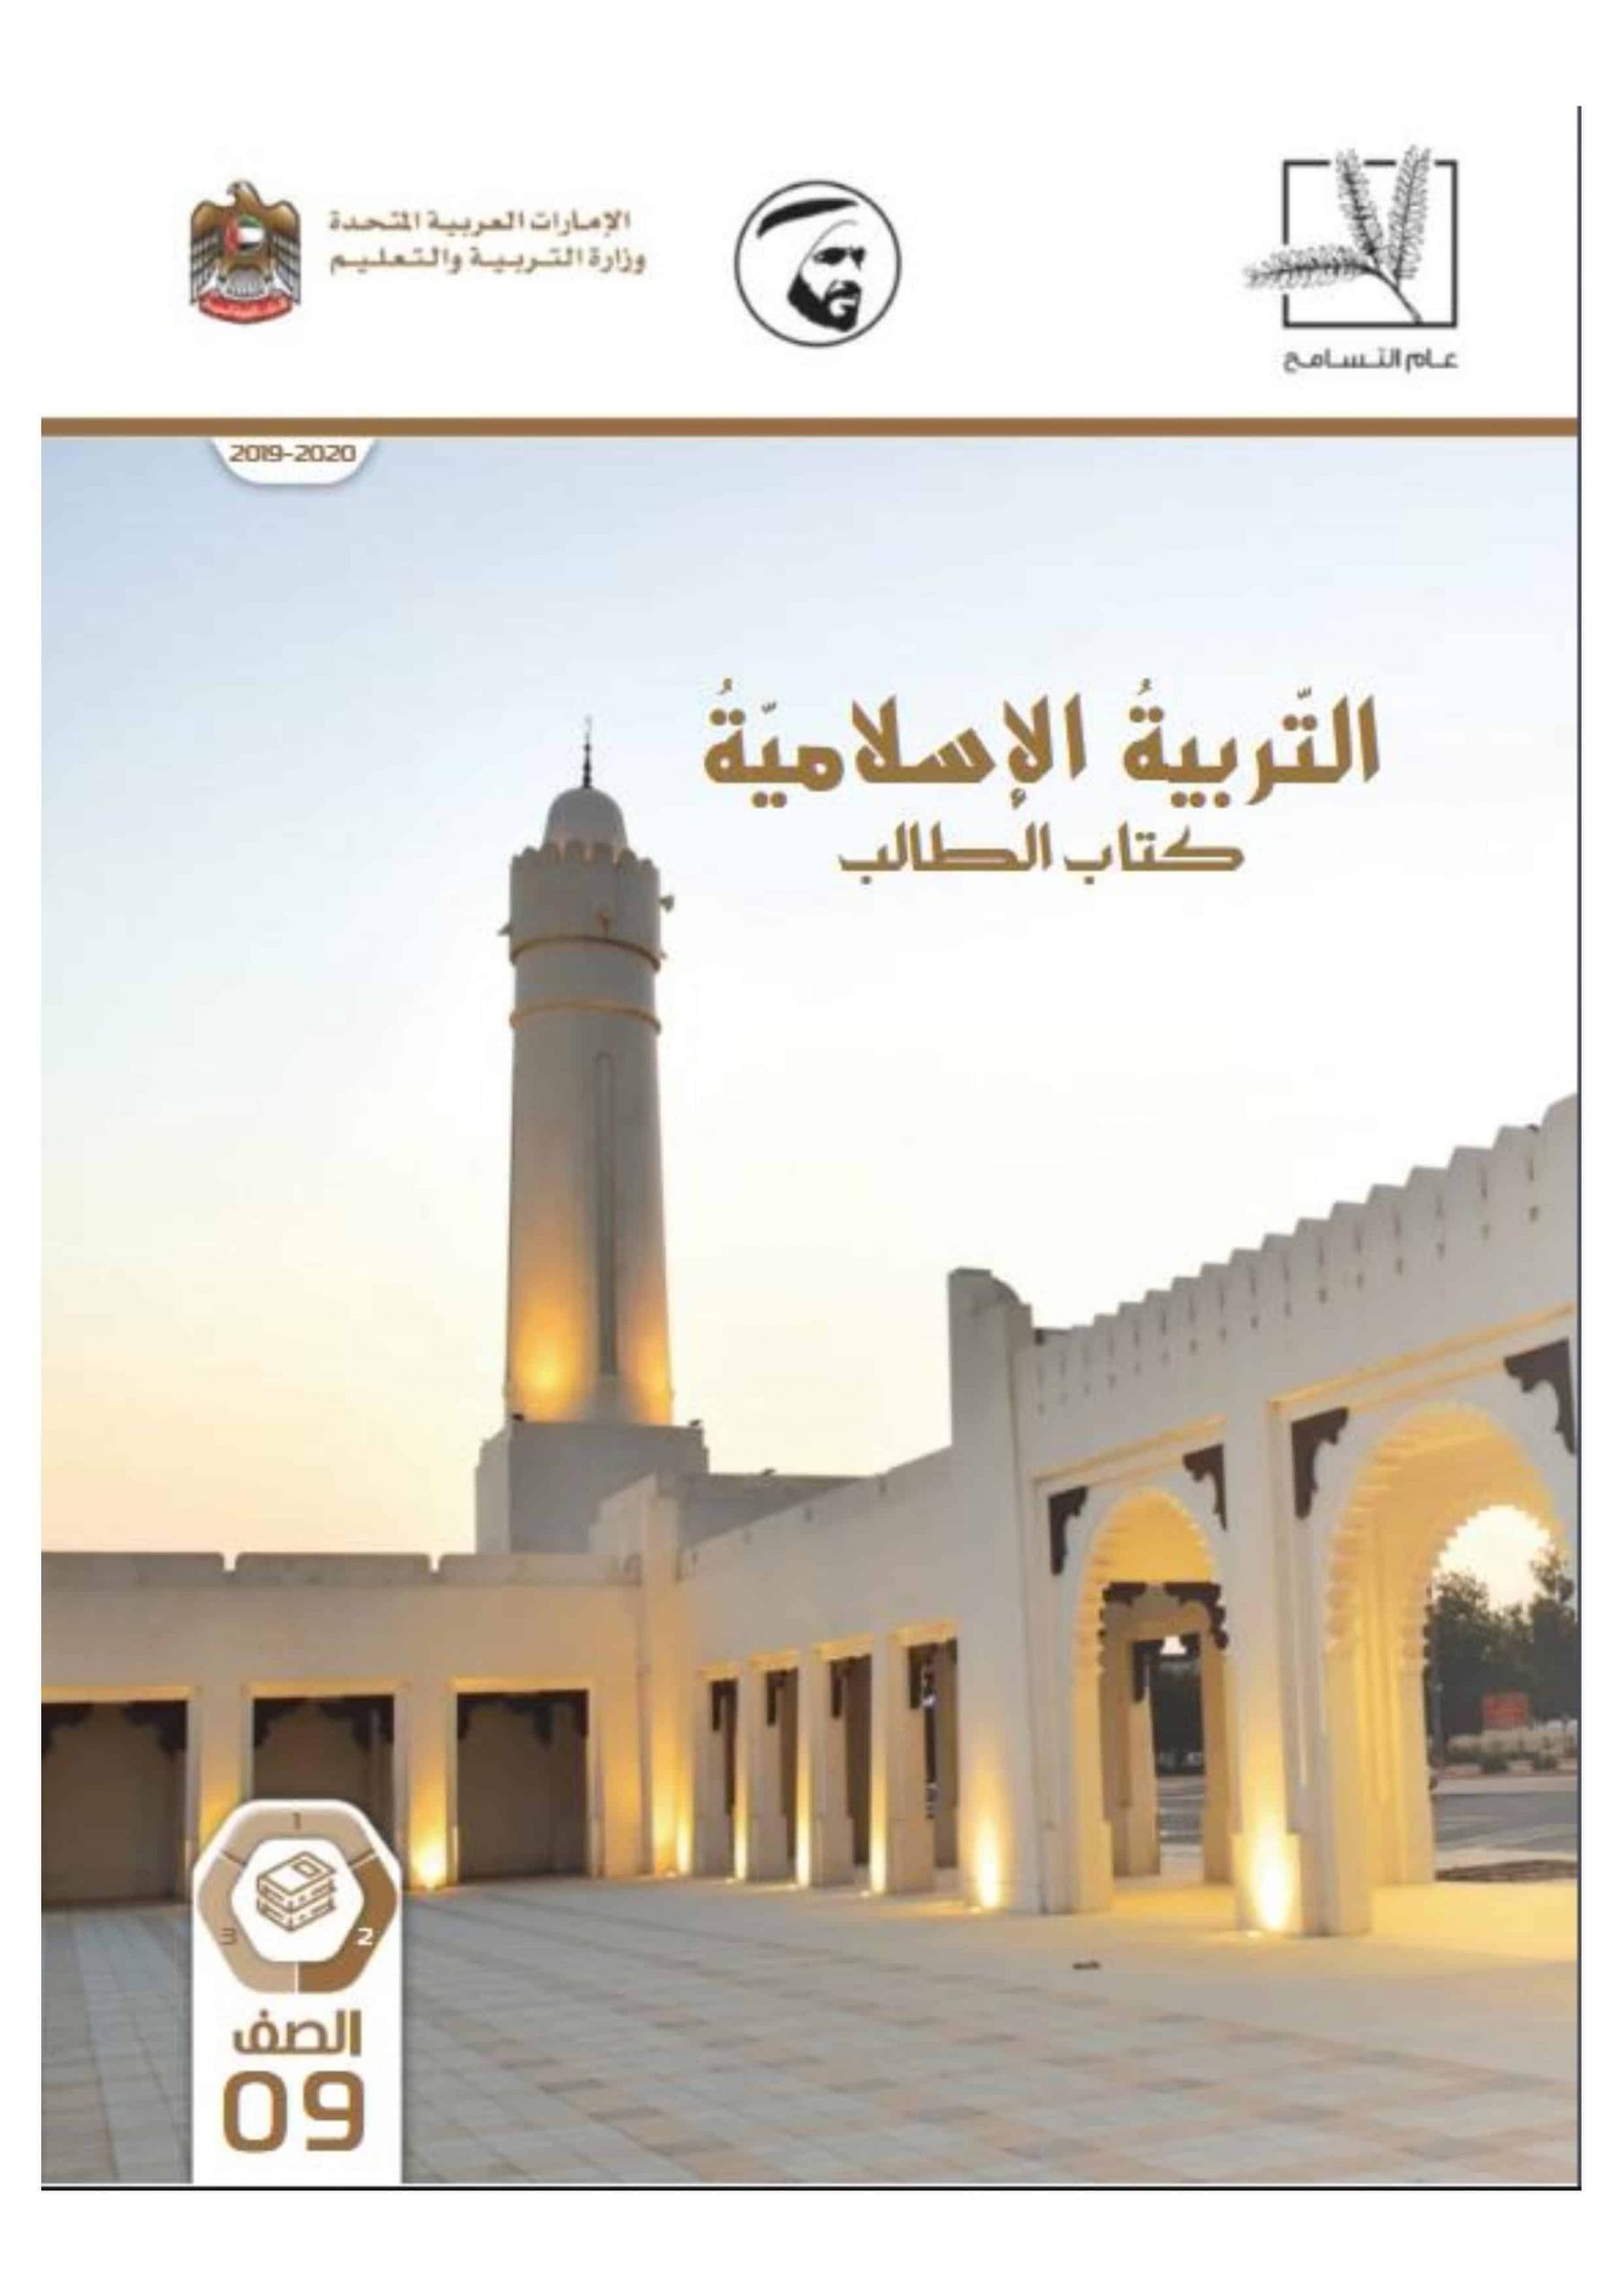 كتاب الطالب الفصل الدراسي الثاني 2019-2020 الصف التاسع مادة التربية الاسلامية